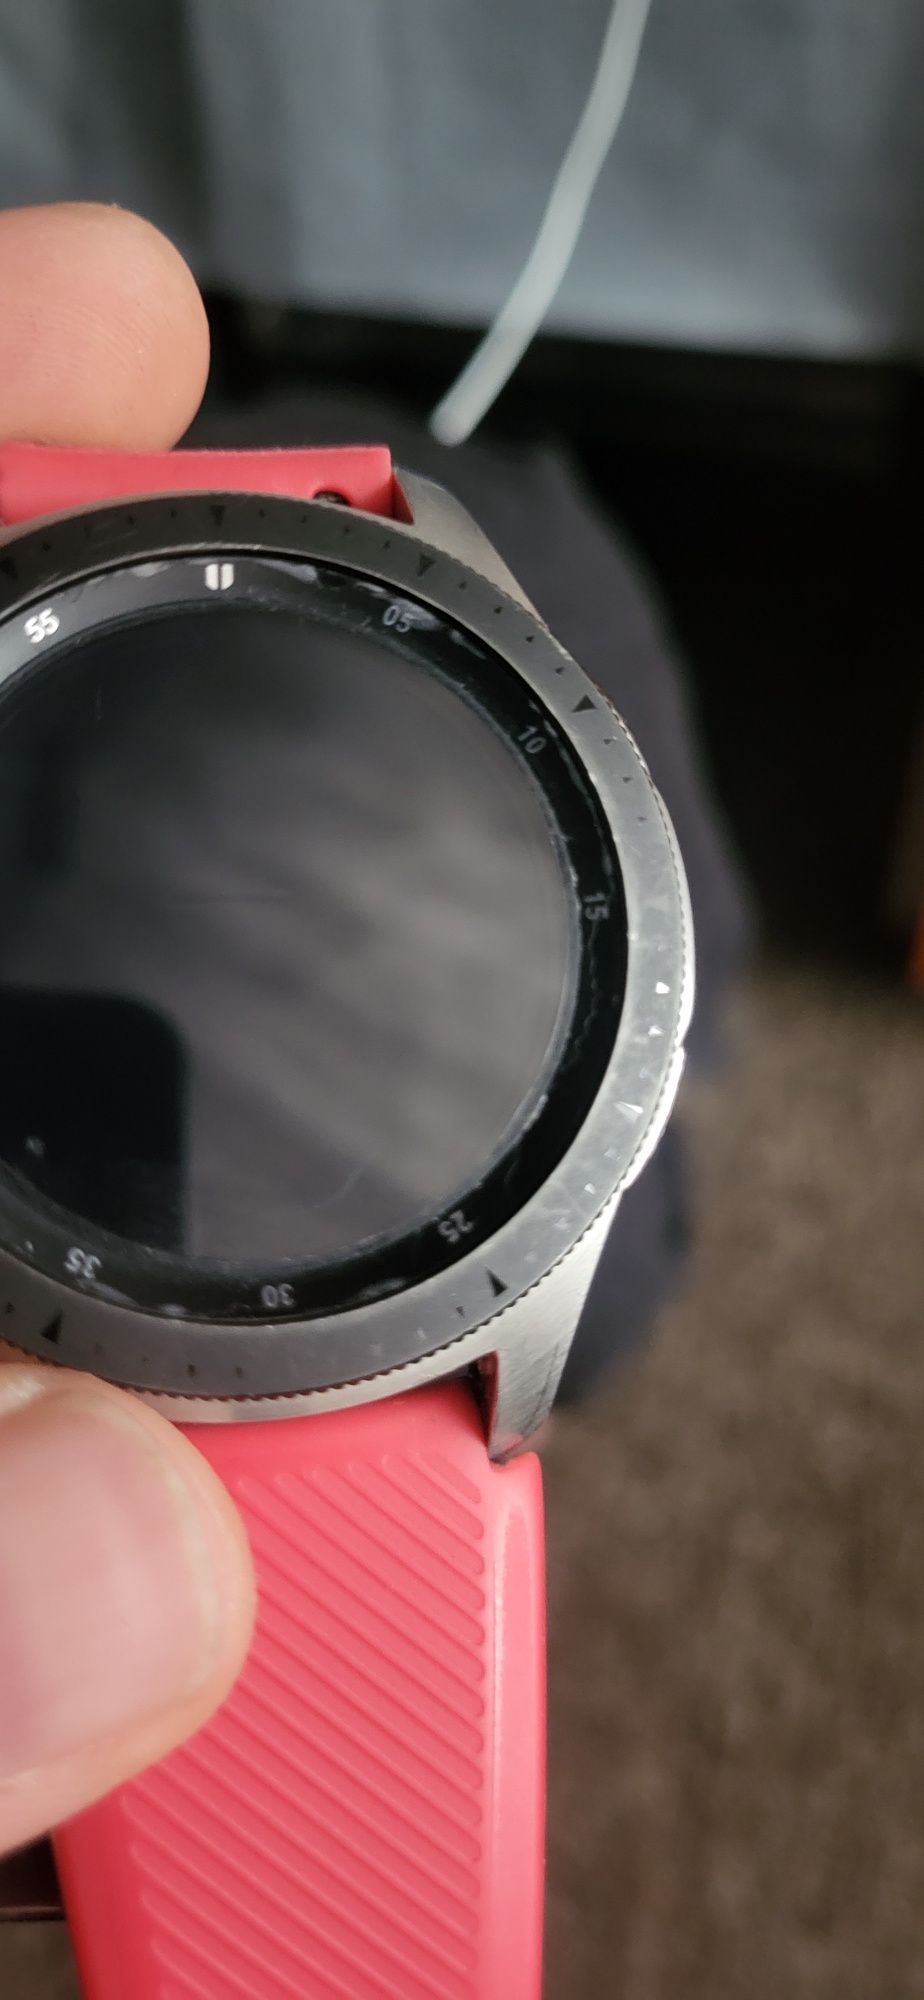 Samsung Watch 46 mm